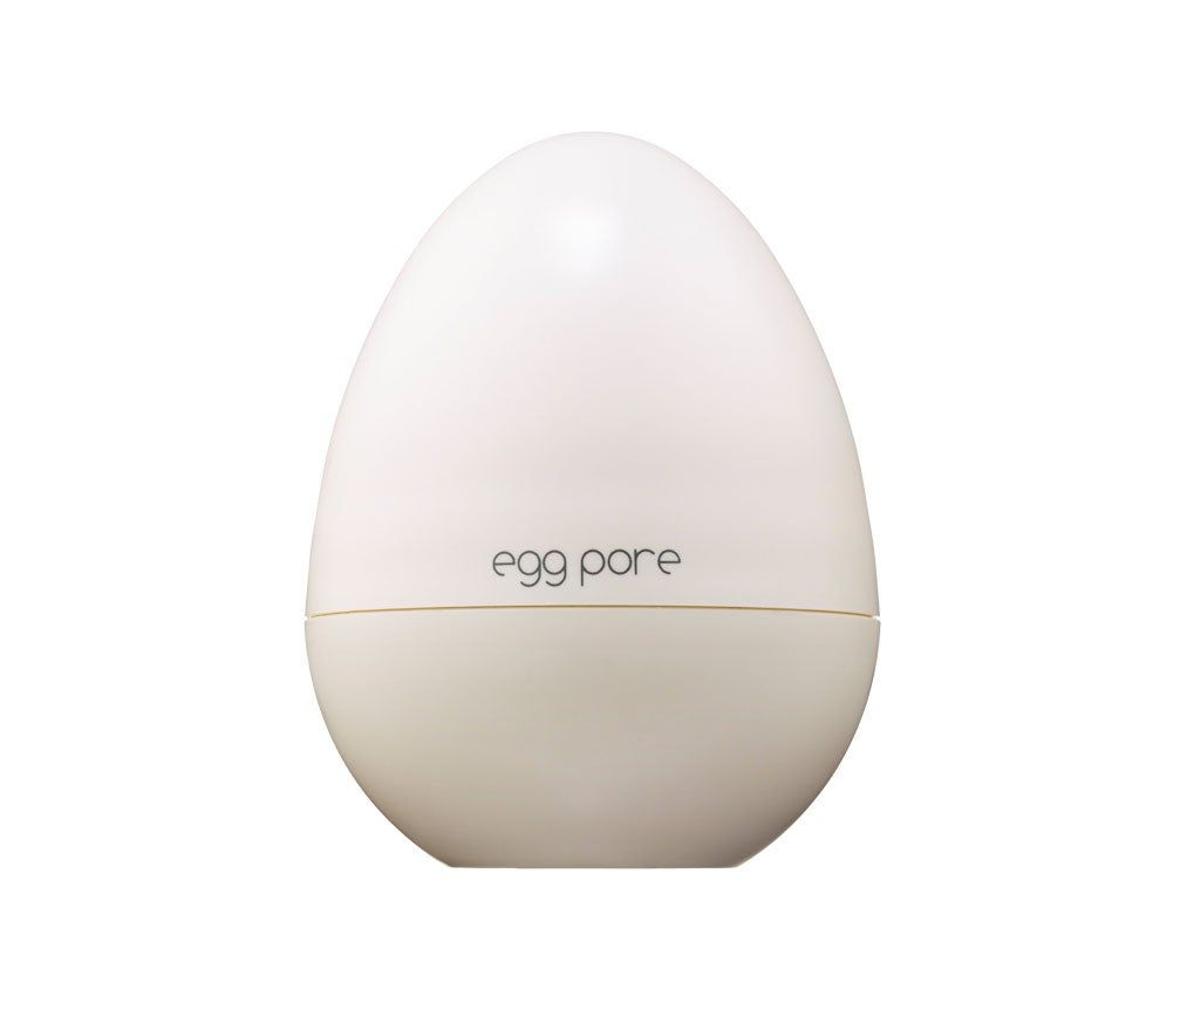 Egg pore sephora